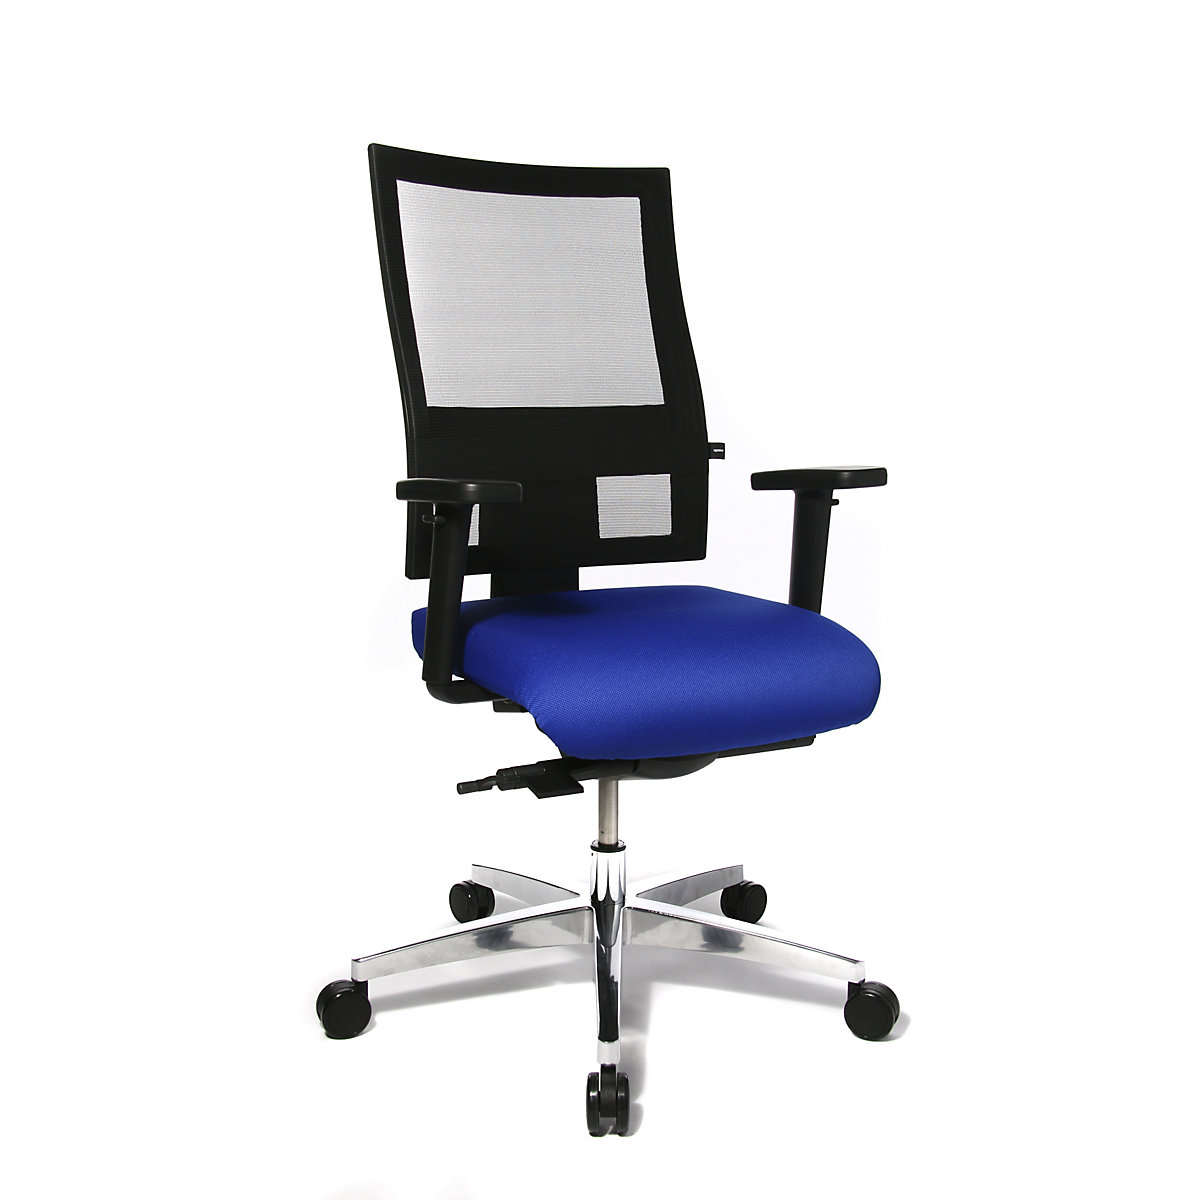 Sedia girevole per ufficio PROFI NET 11 – Topstar, braccioli regolabili in altezza con piano d'appoggio morbido, blu-2